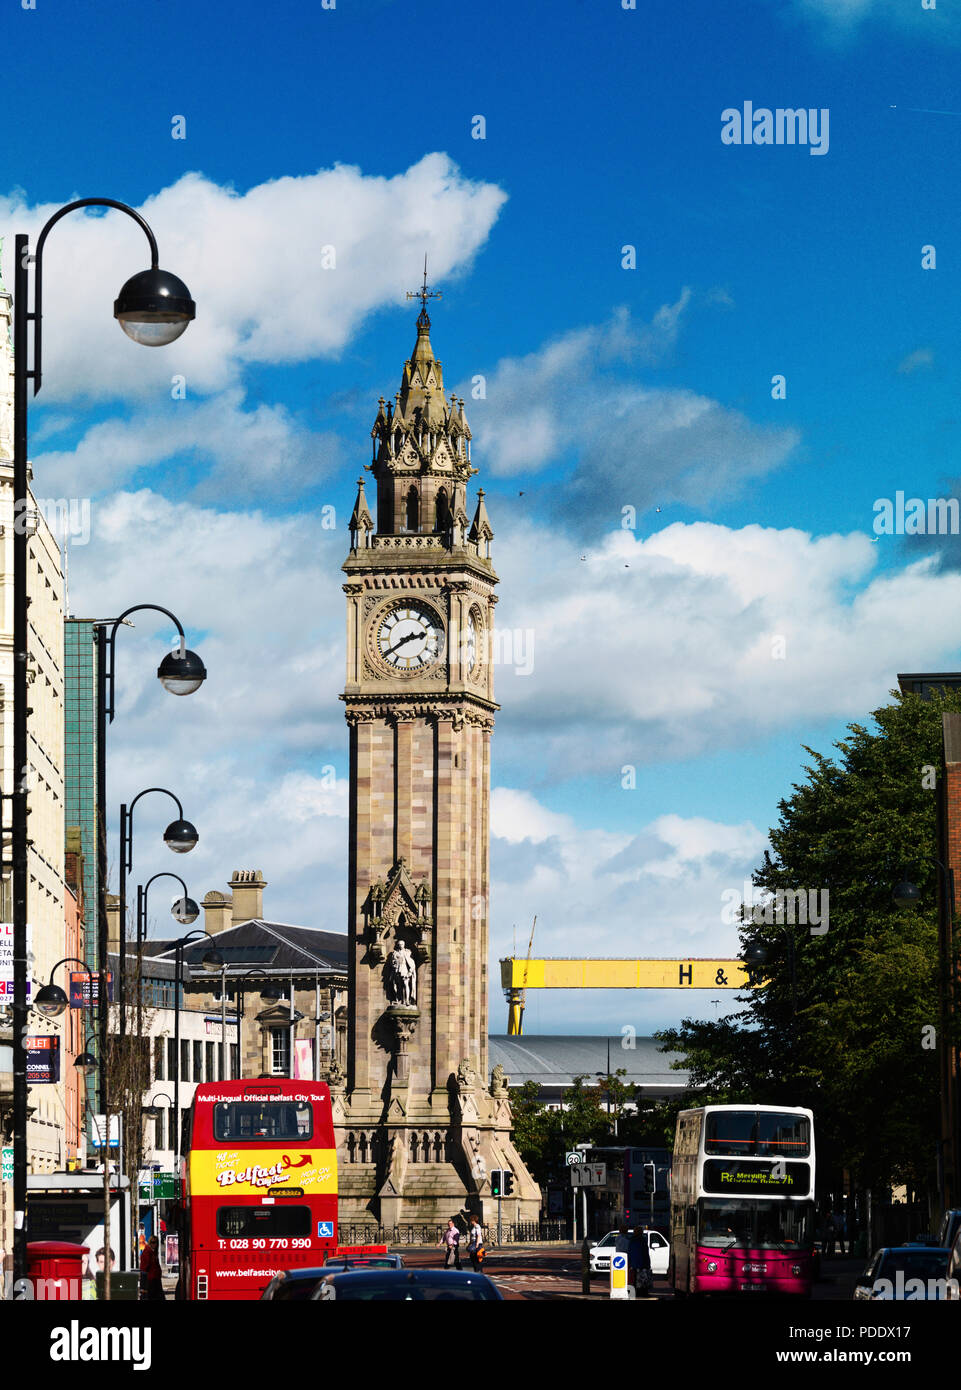 Albert Memorial Clock, Clock Tower im Jahre 1869 erbaut, hat eine Neigung  aufgrund der Erde die Stadt auf der aufgebaut ist Stockfotografie - Alamy